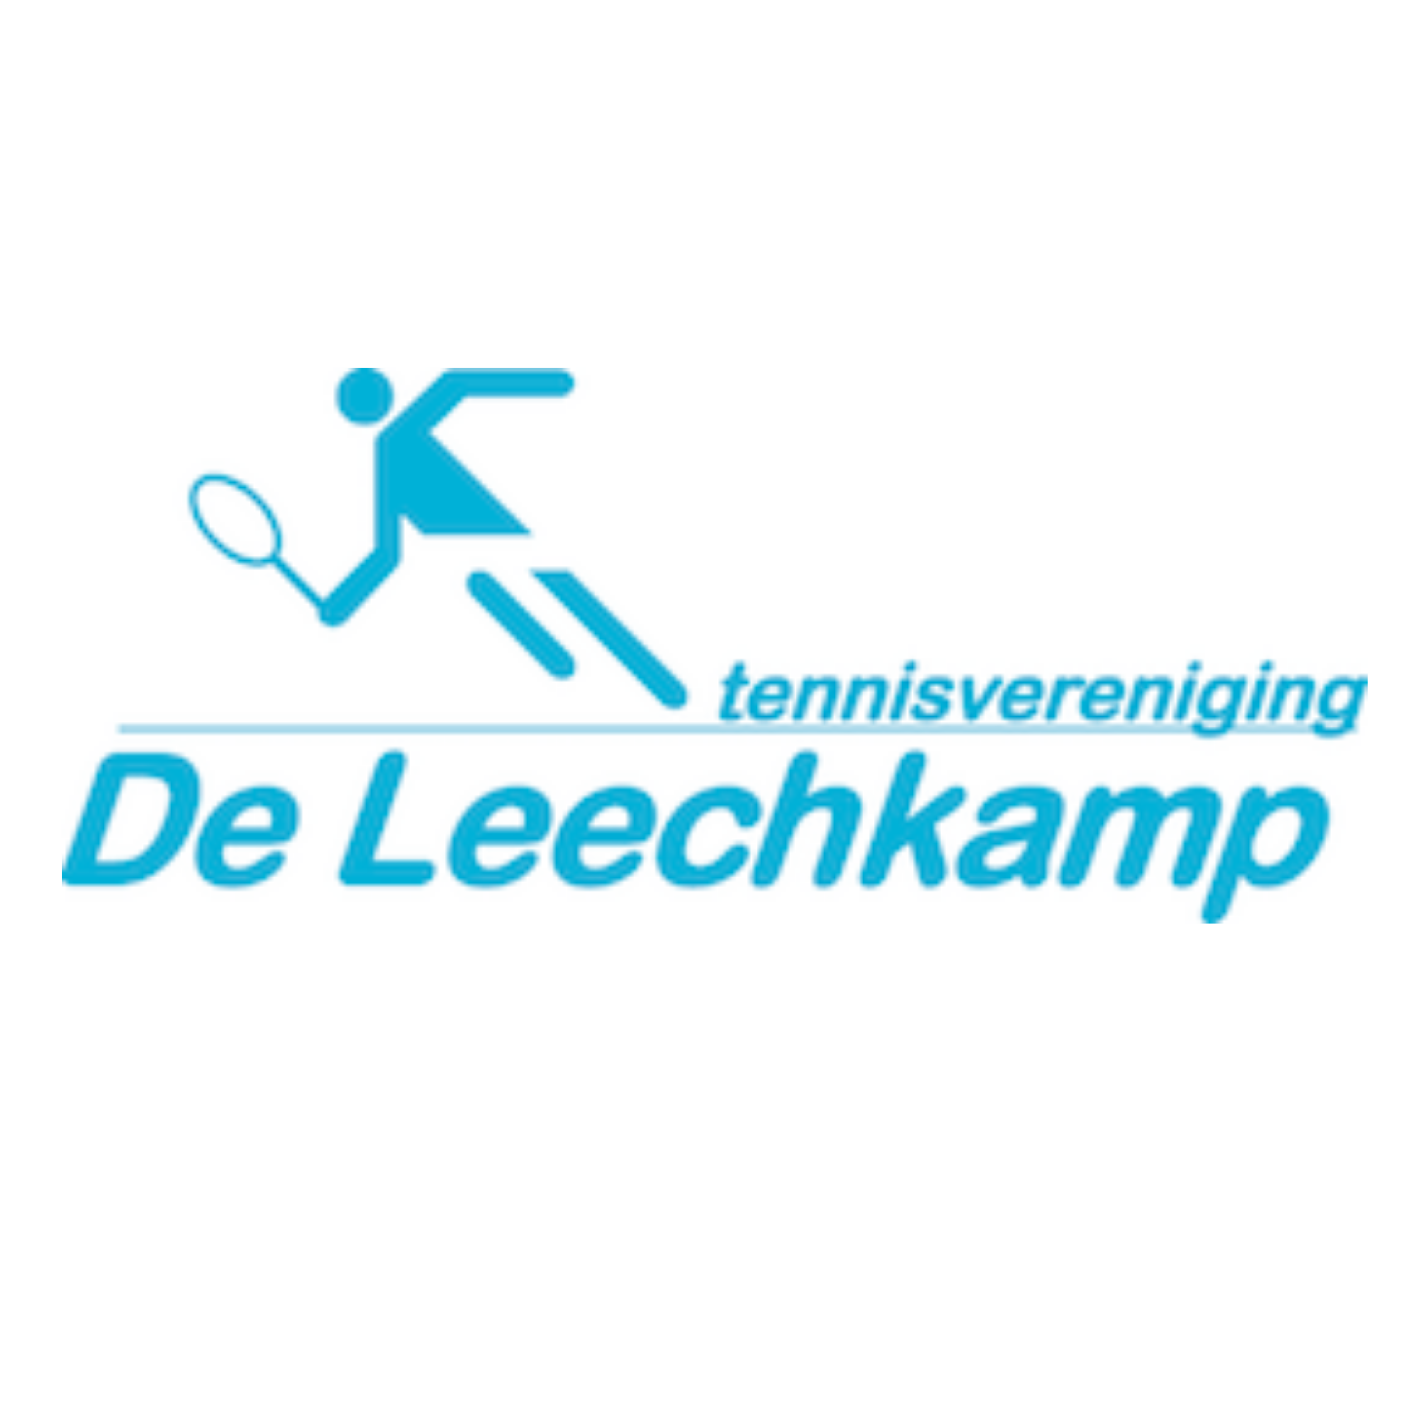 Profile image of venue TV De Leechkamp